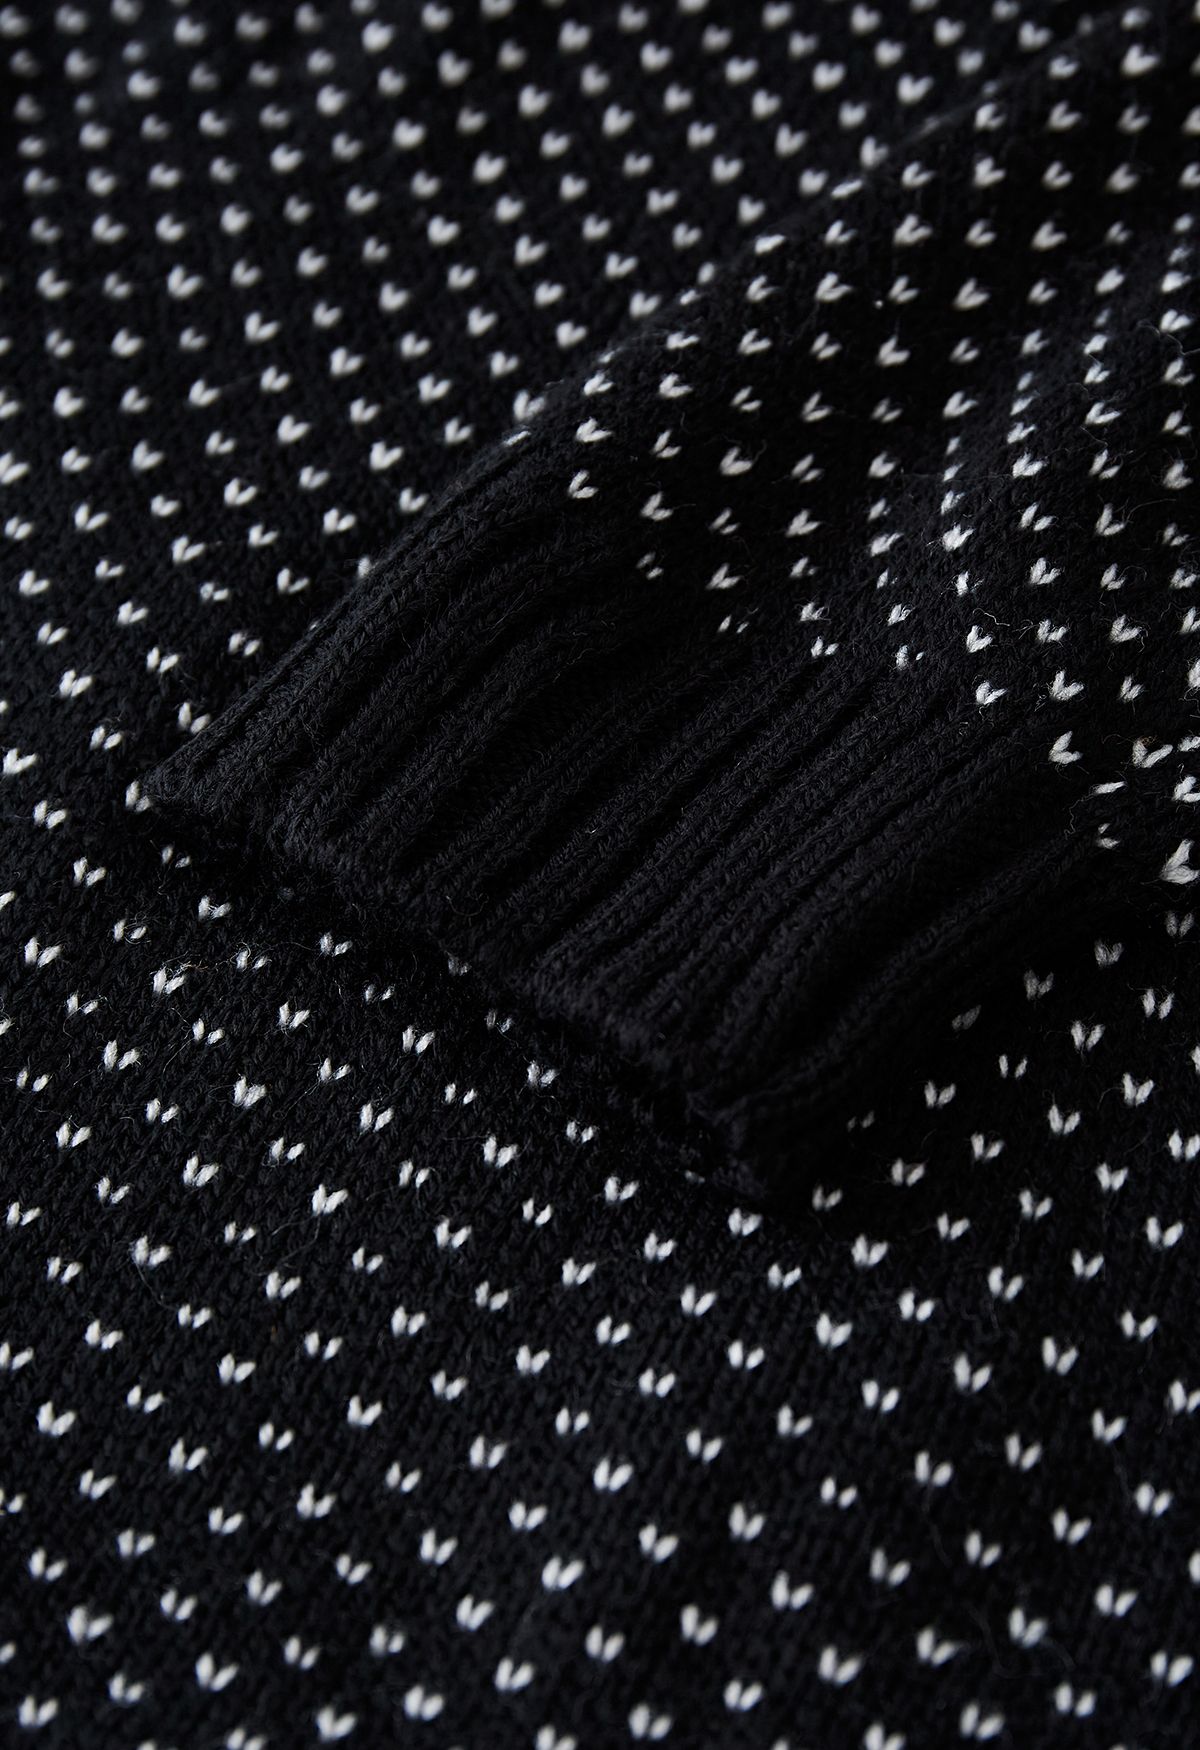 Lindo suéter de malha de mangas compridas Ghost em preto